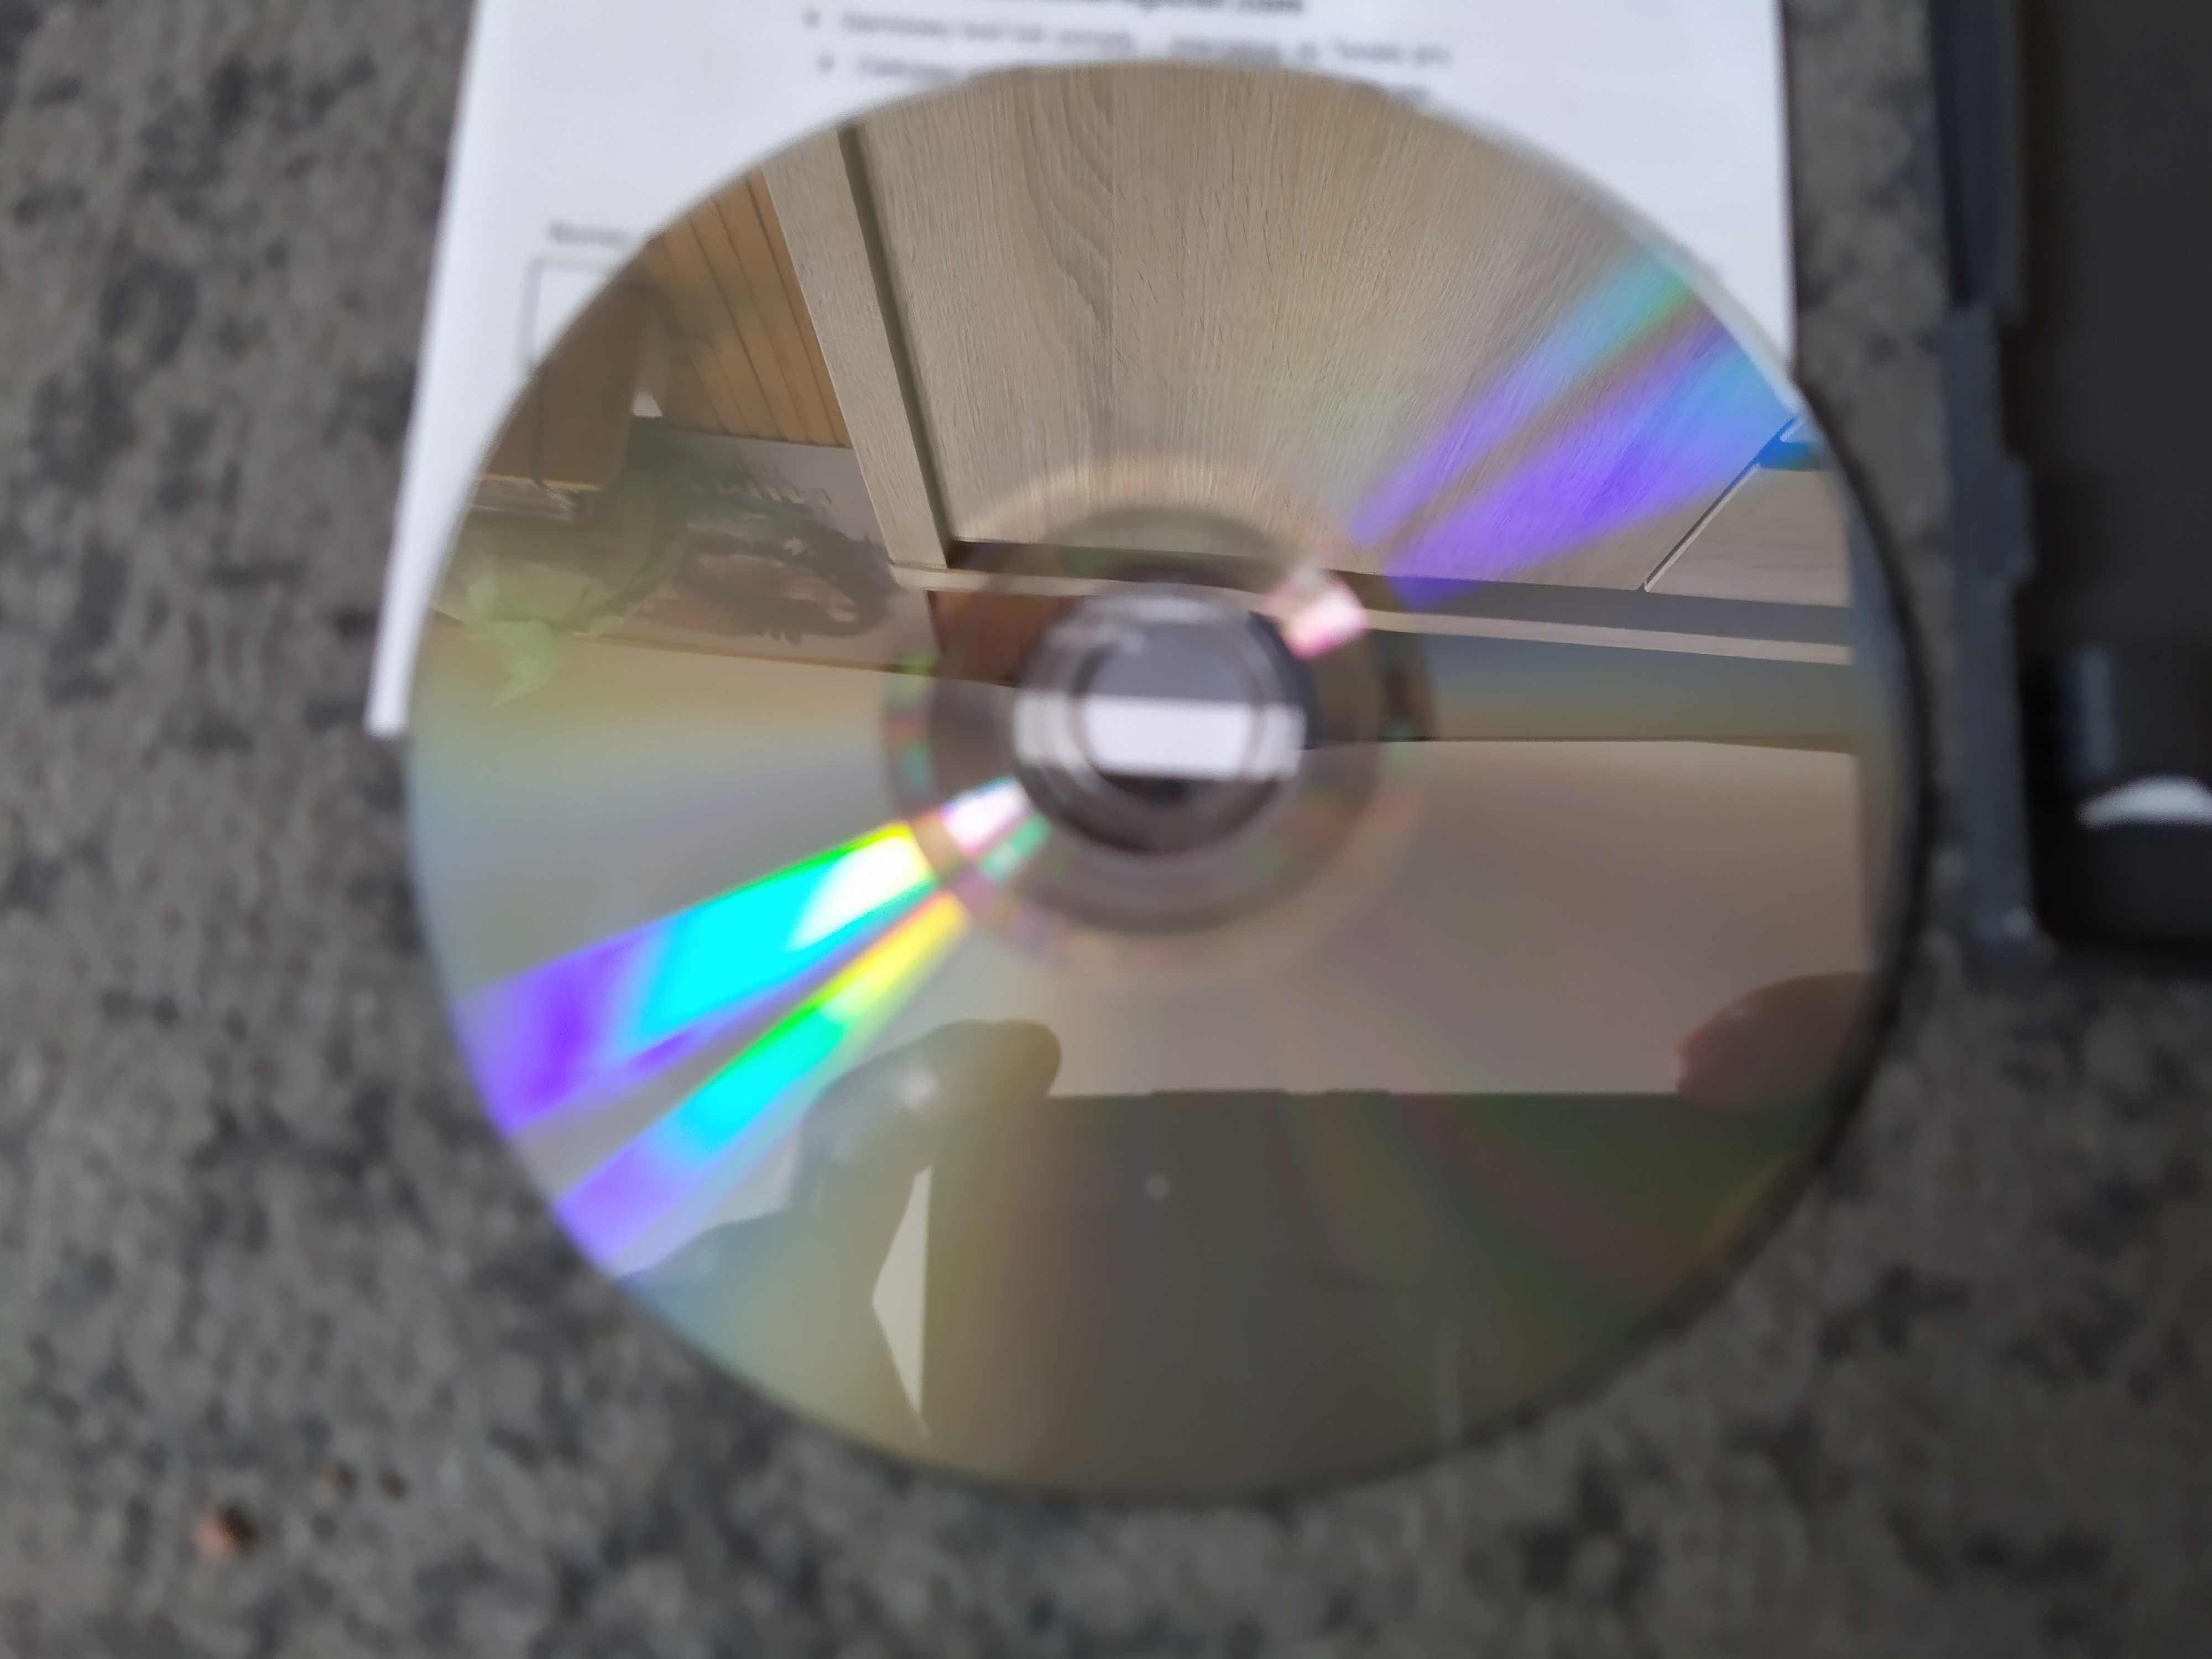 FIFA 12 PC DVD non-cdkey